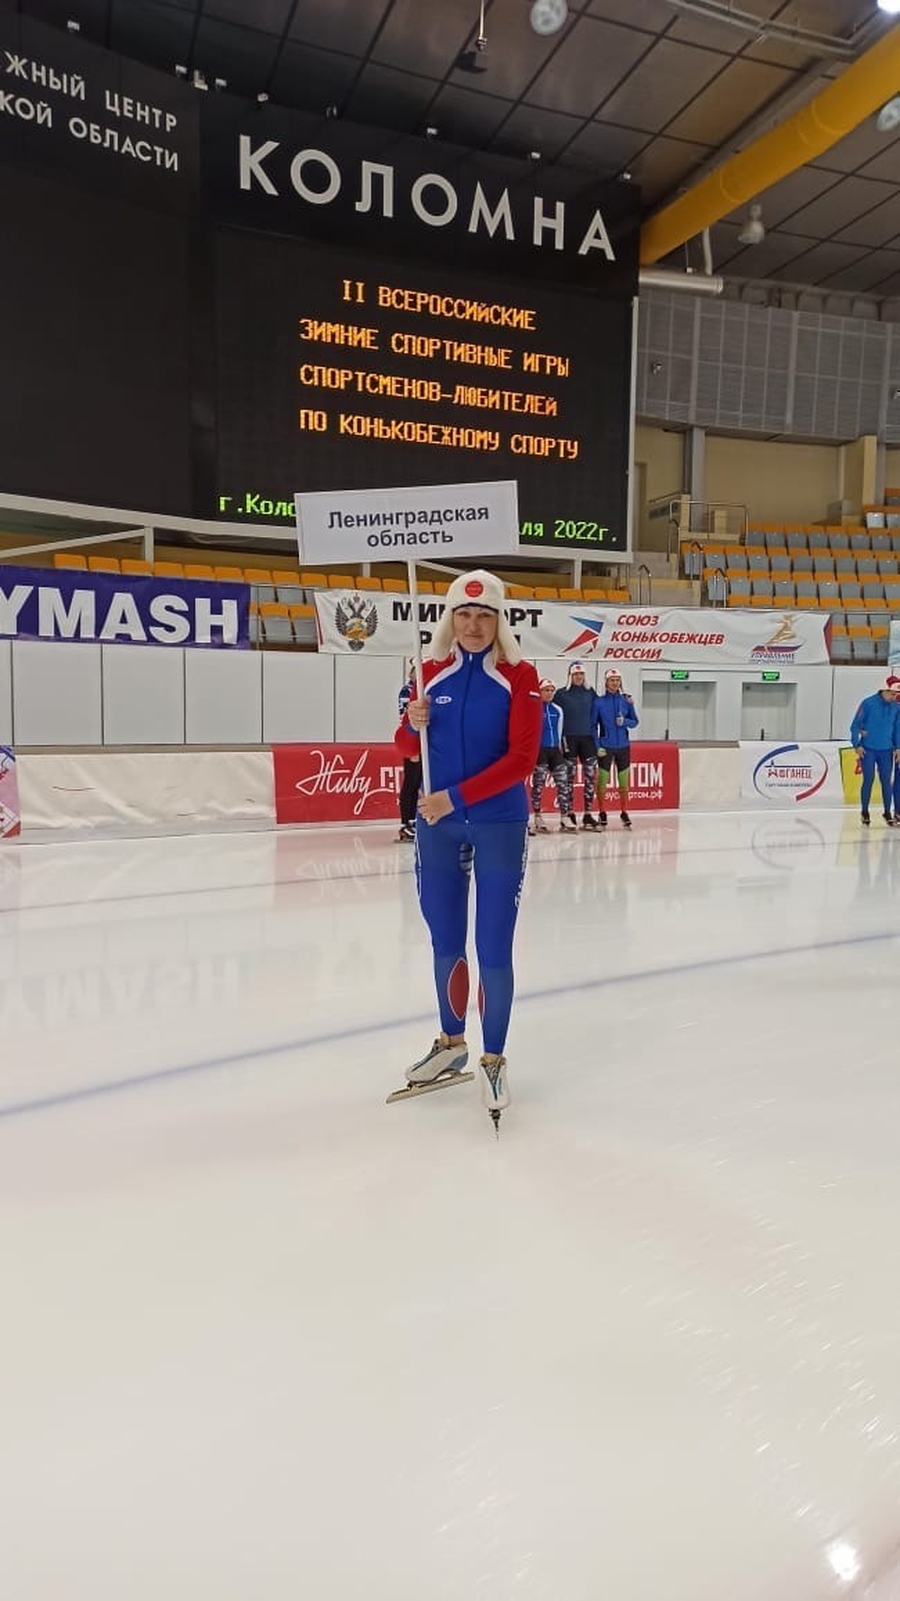 Александра Валуева  — сильнейшая среди любителей в конькобежном спорте